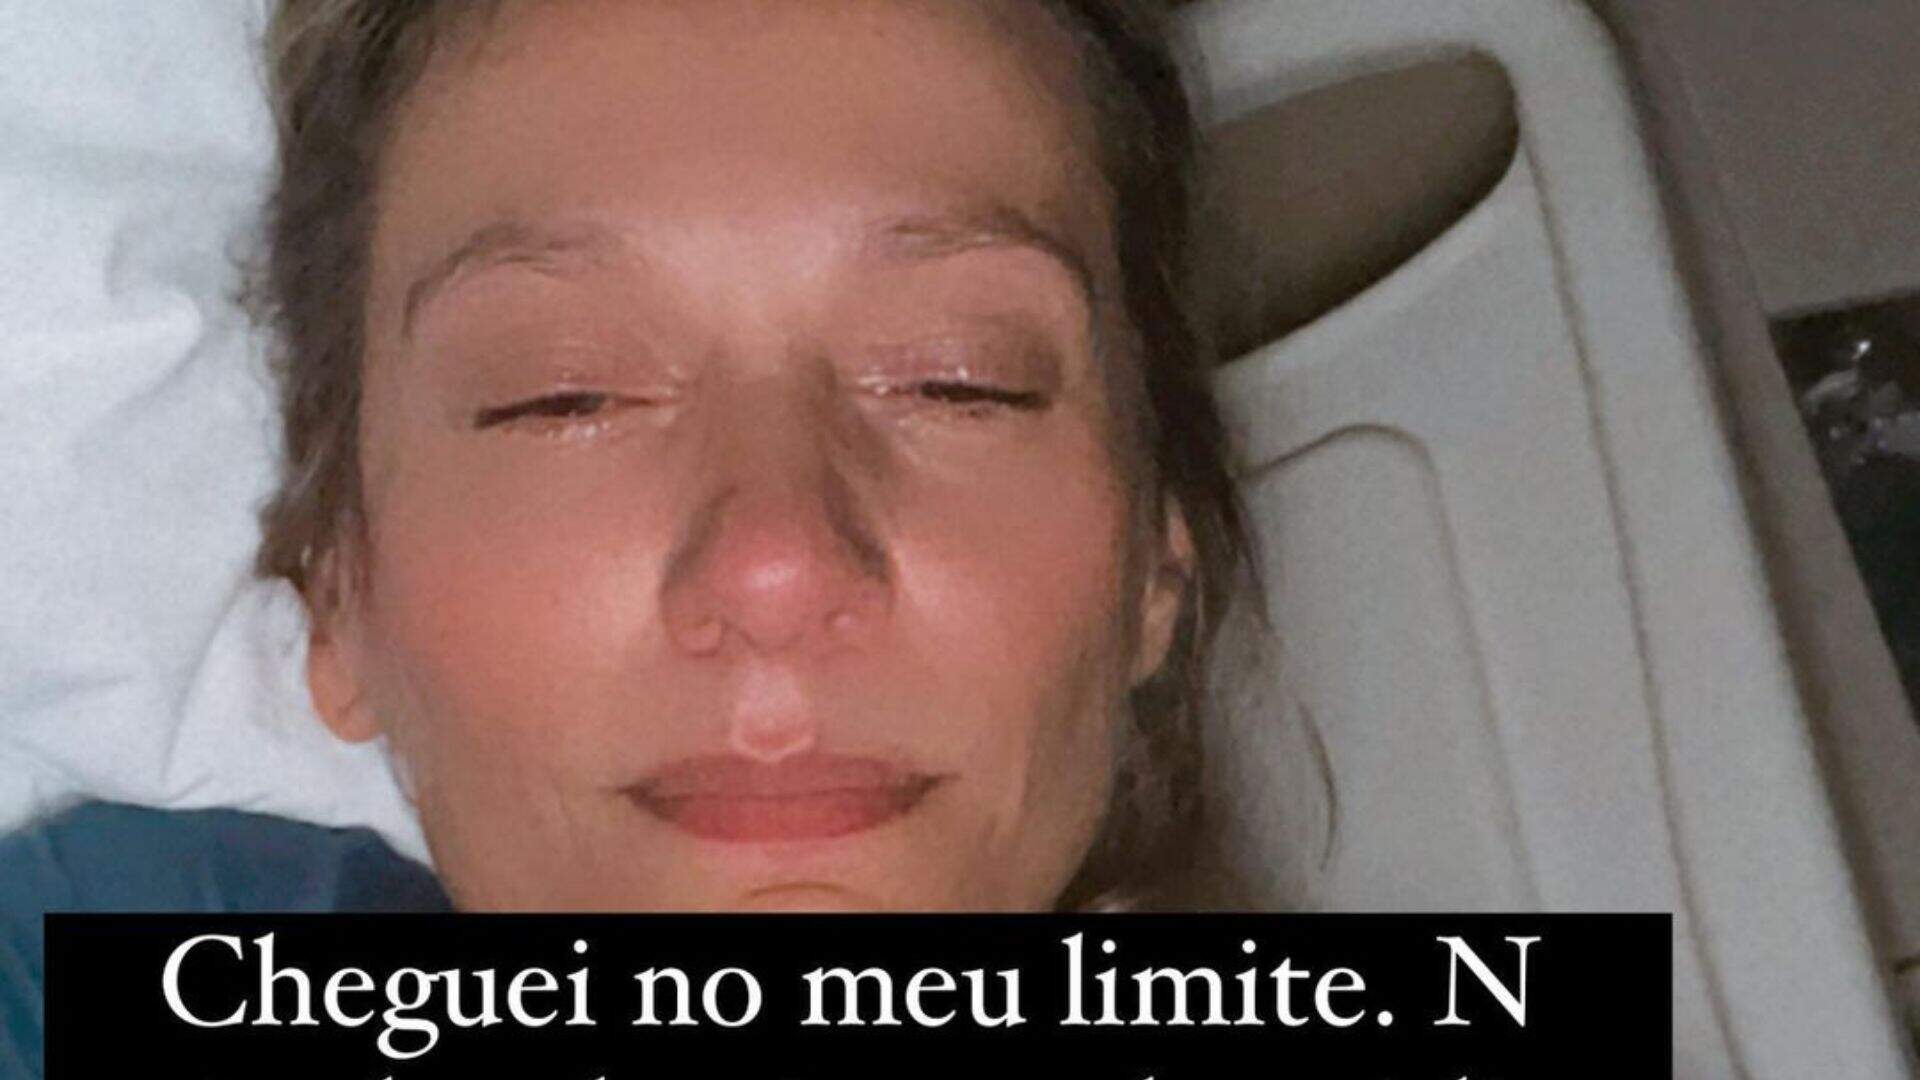 Luisa Mell se afasta das redes sociais para cuidar da saúde: “Meu corpo não aguenta mais” - Metropolitana FM